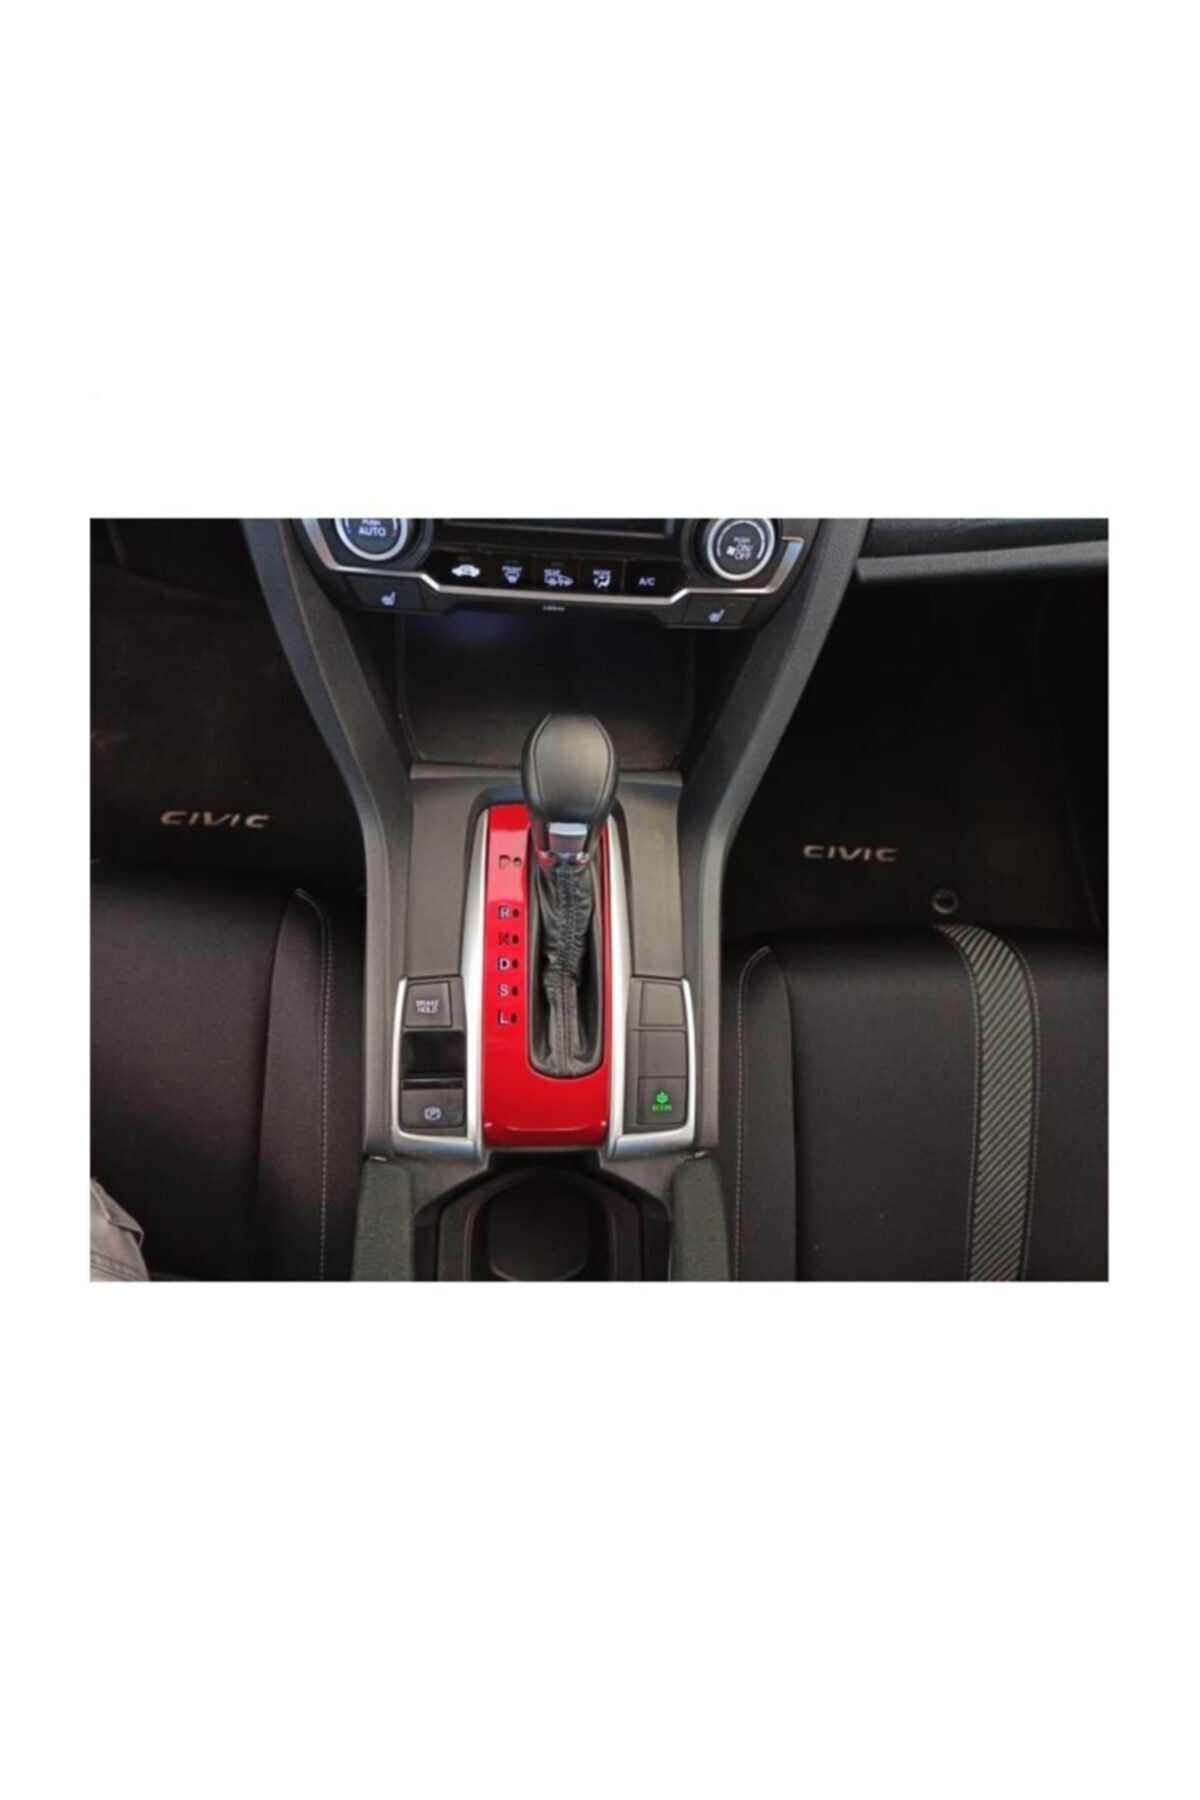 REPLAX Honda Civic Fc5 Fk7 Otomatik Vites Kaplaması Kırmızı 2016-2020